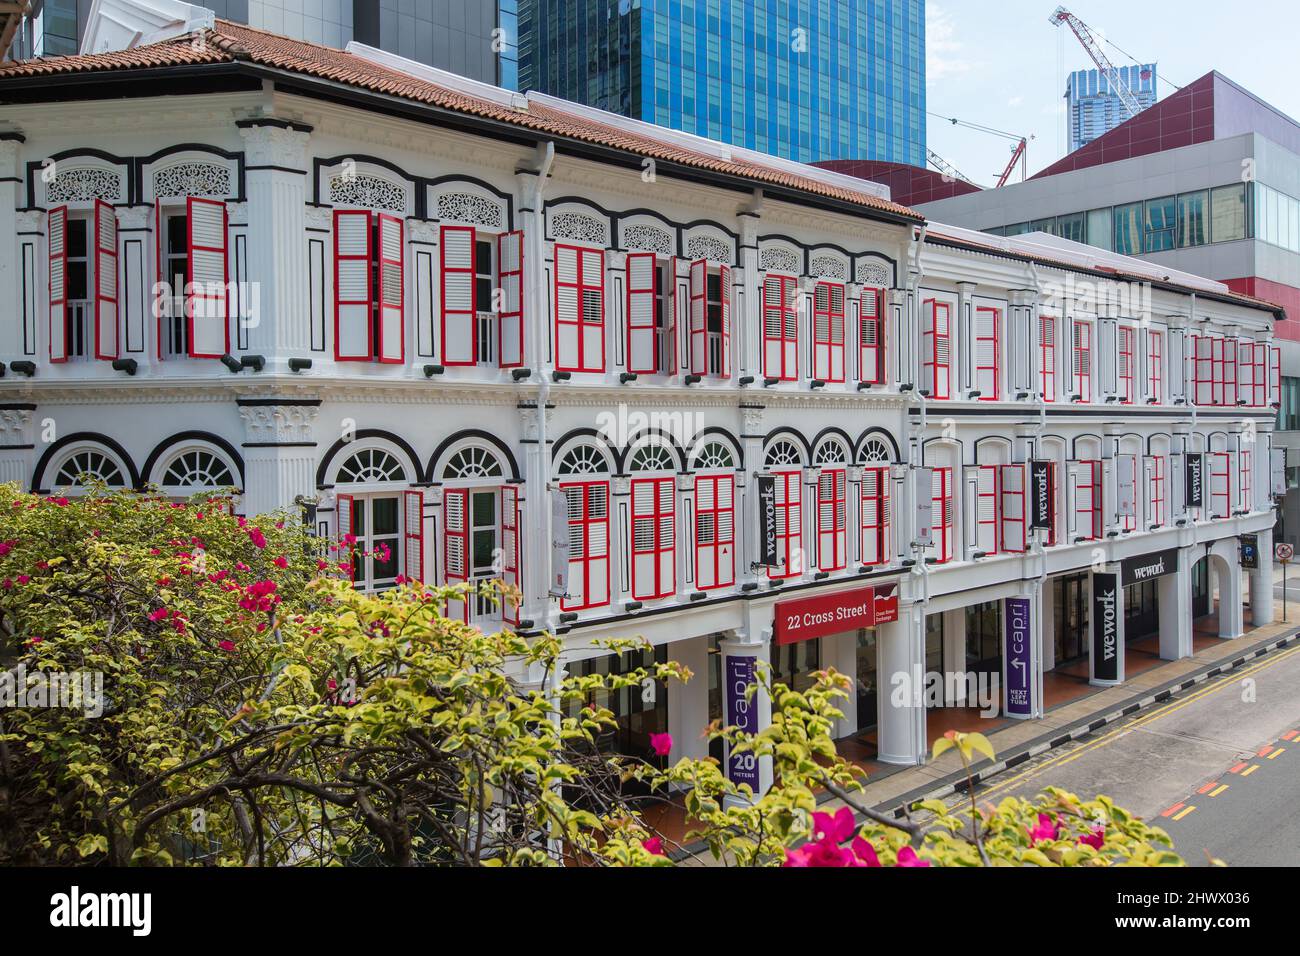 Alte Ladengeschäfte, die in eine kommerzielle Struktur für Unternehmen umgestaltet wurden. Chinatown, Singapur. Stockfoto